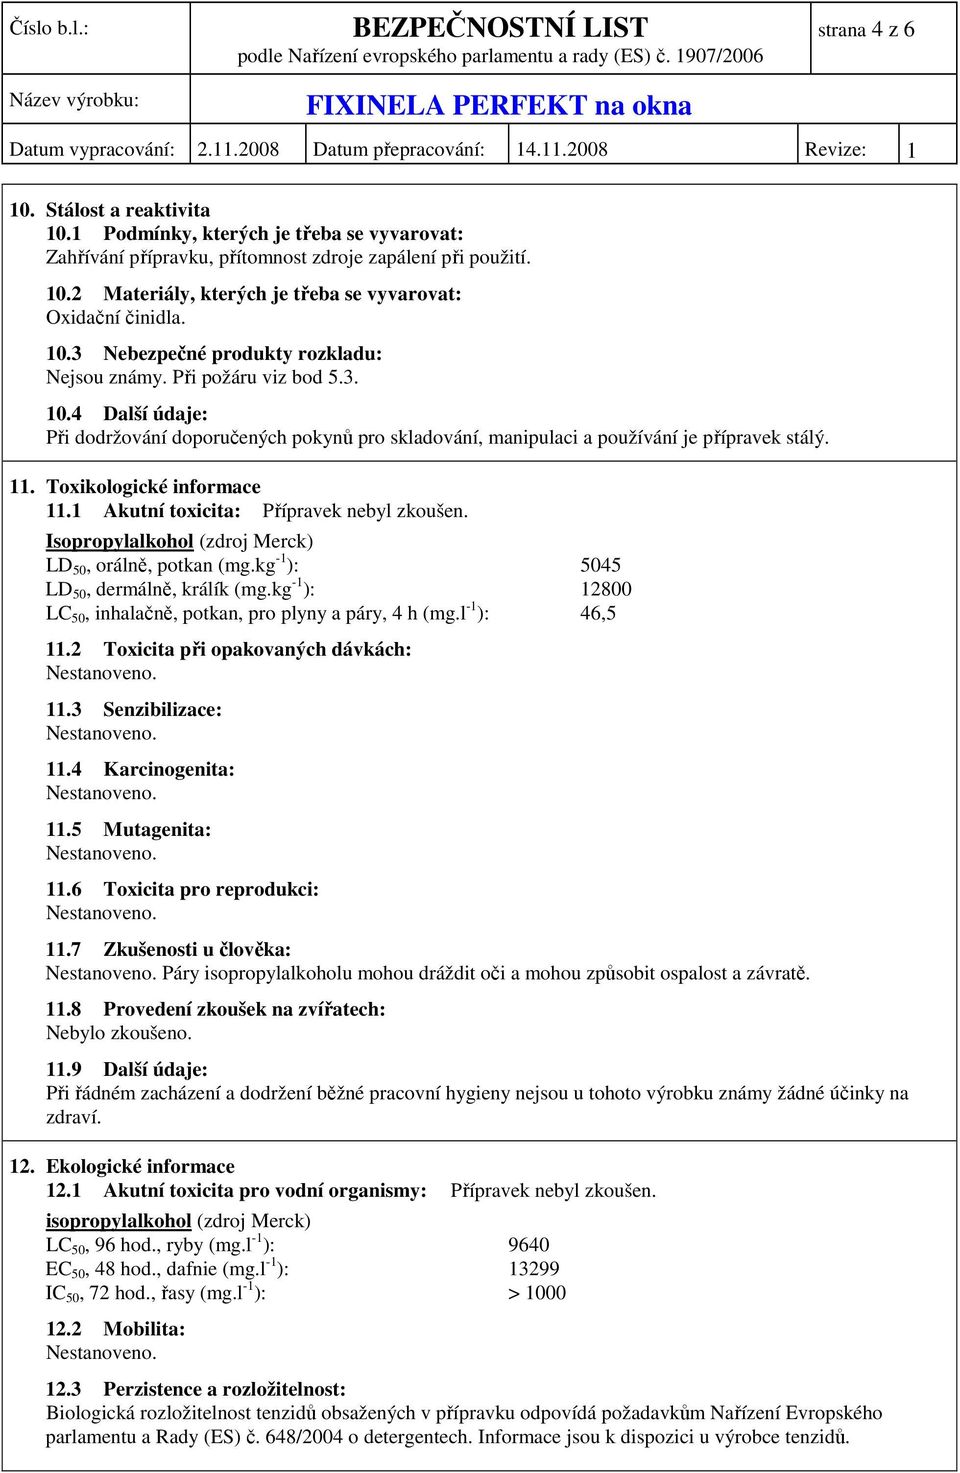 Toxikologické informace 11.1 Akutní toxicita: Přípravek nebyl zkoušen. Isopropylalkohol (zdroj Merck) LD 50, orálně, potkan (mg.kg -1 ): 5045 LD 50, dermálně, králík (mg.